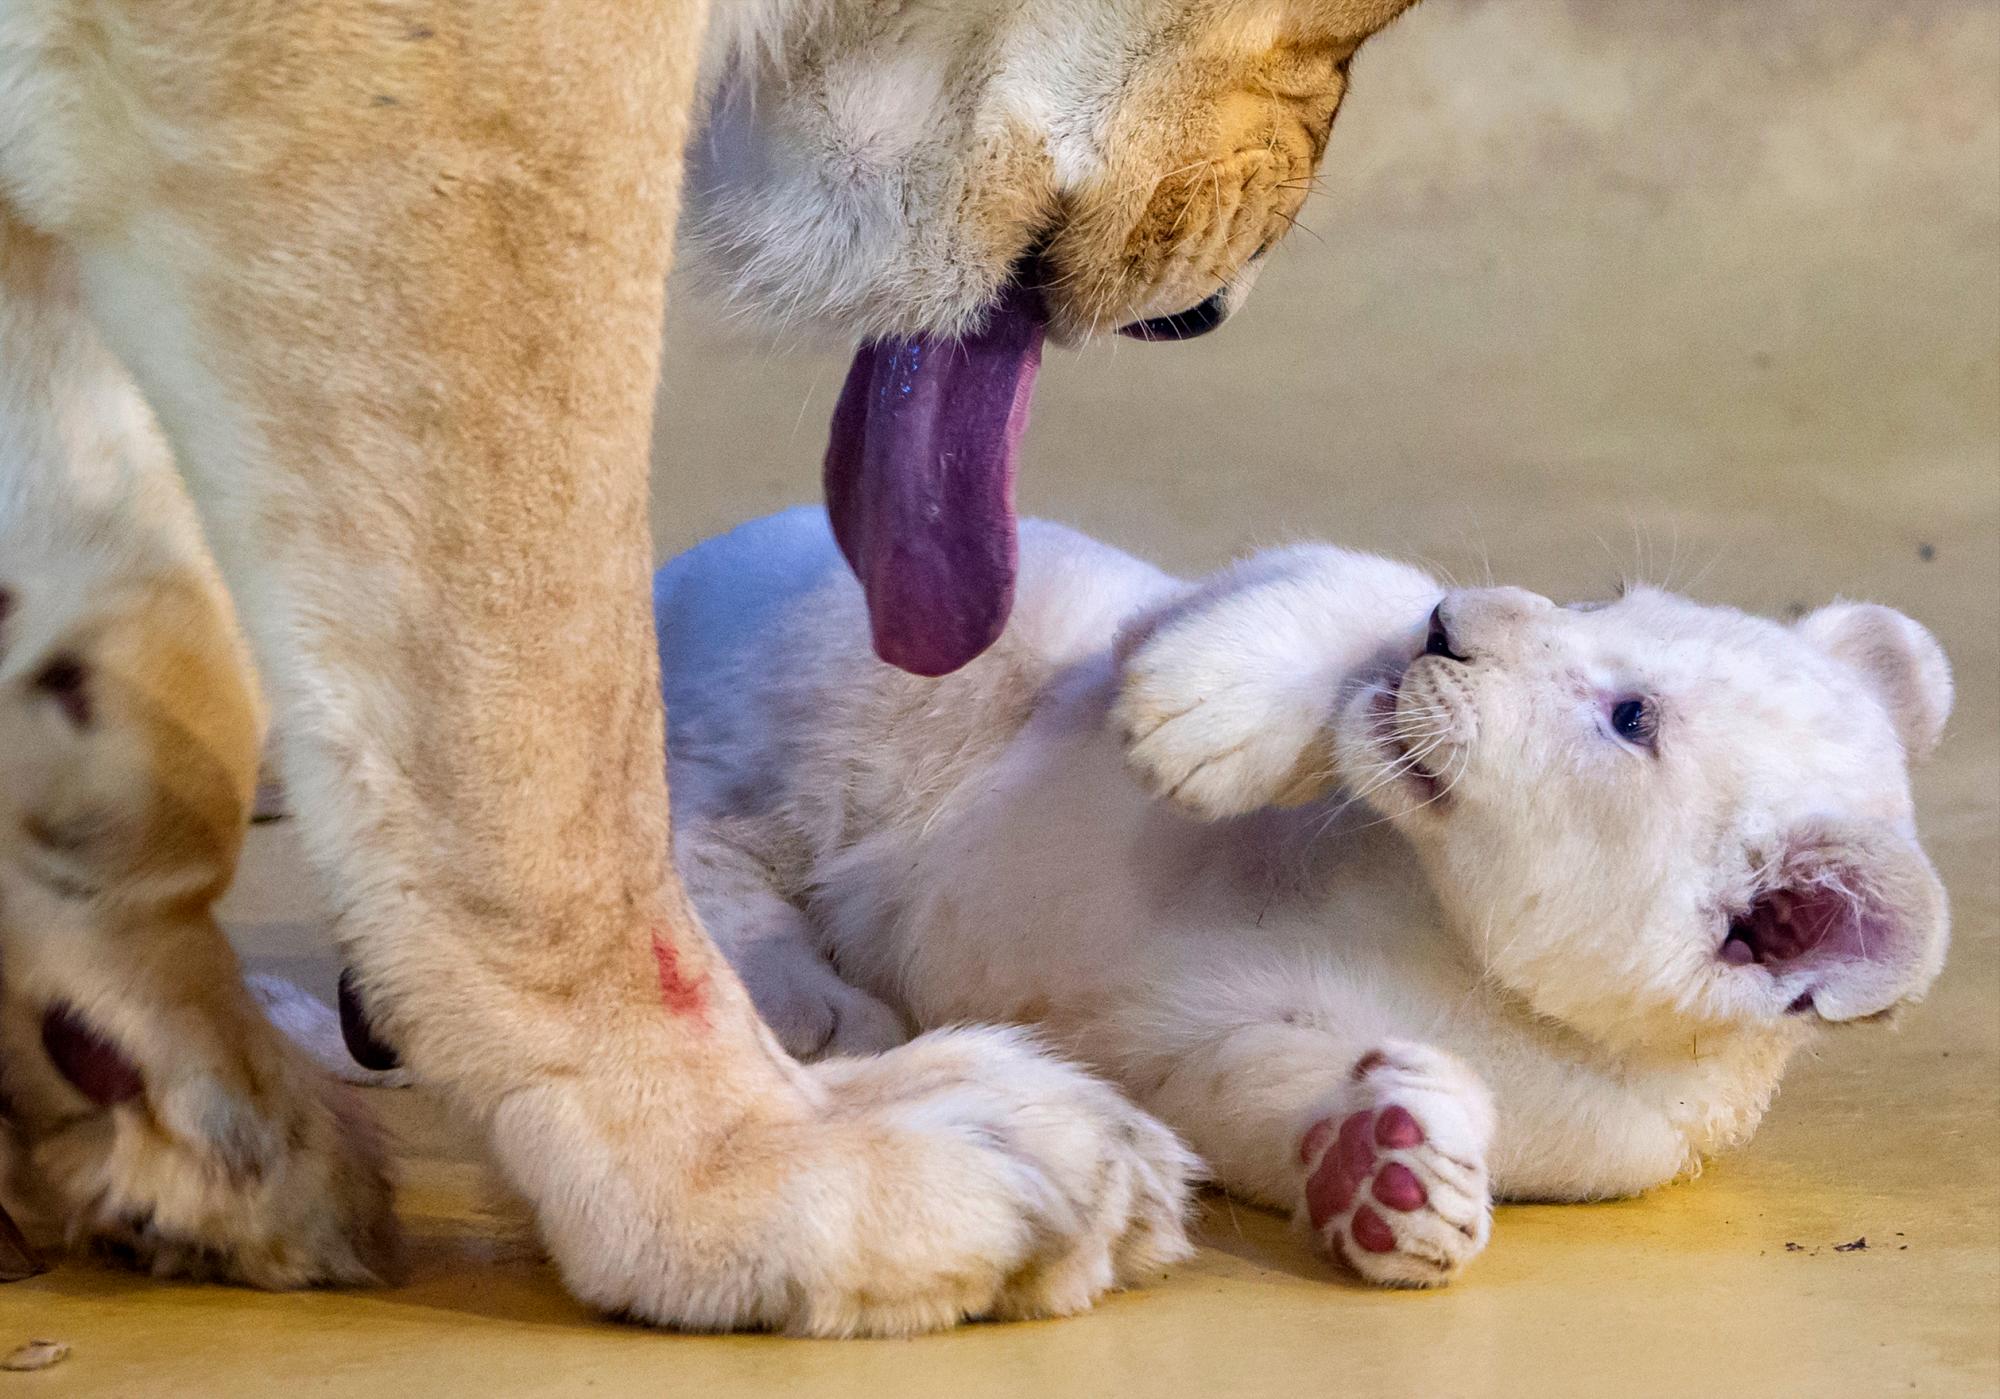 La madre león Kiara juega con uno de sus tres cachorros de león blanco en su recinto en el zoológico de Magdeburgo, Alemania, el miércoles 15 de enero de 2020. Los guardianes pesaron a los cachorros de león y realizaron controles de salud. Los leones jóvenes, que son raros en la naturaleza, nacieron el 11 de noviembre de 2019